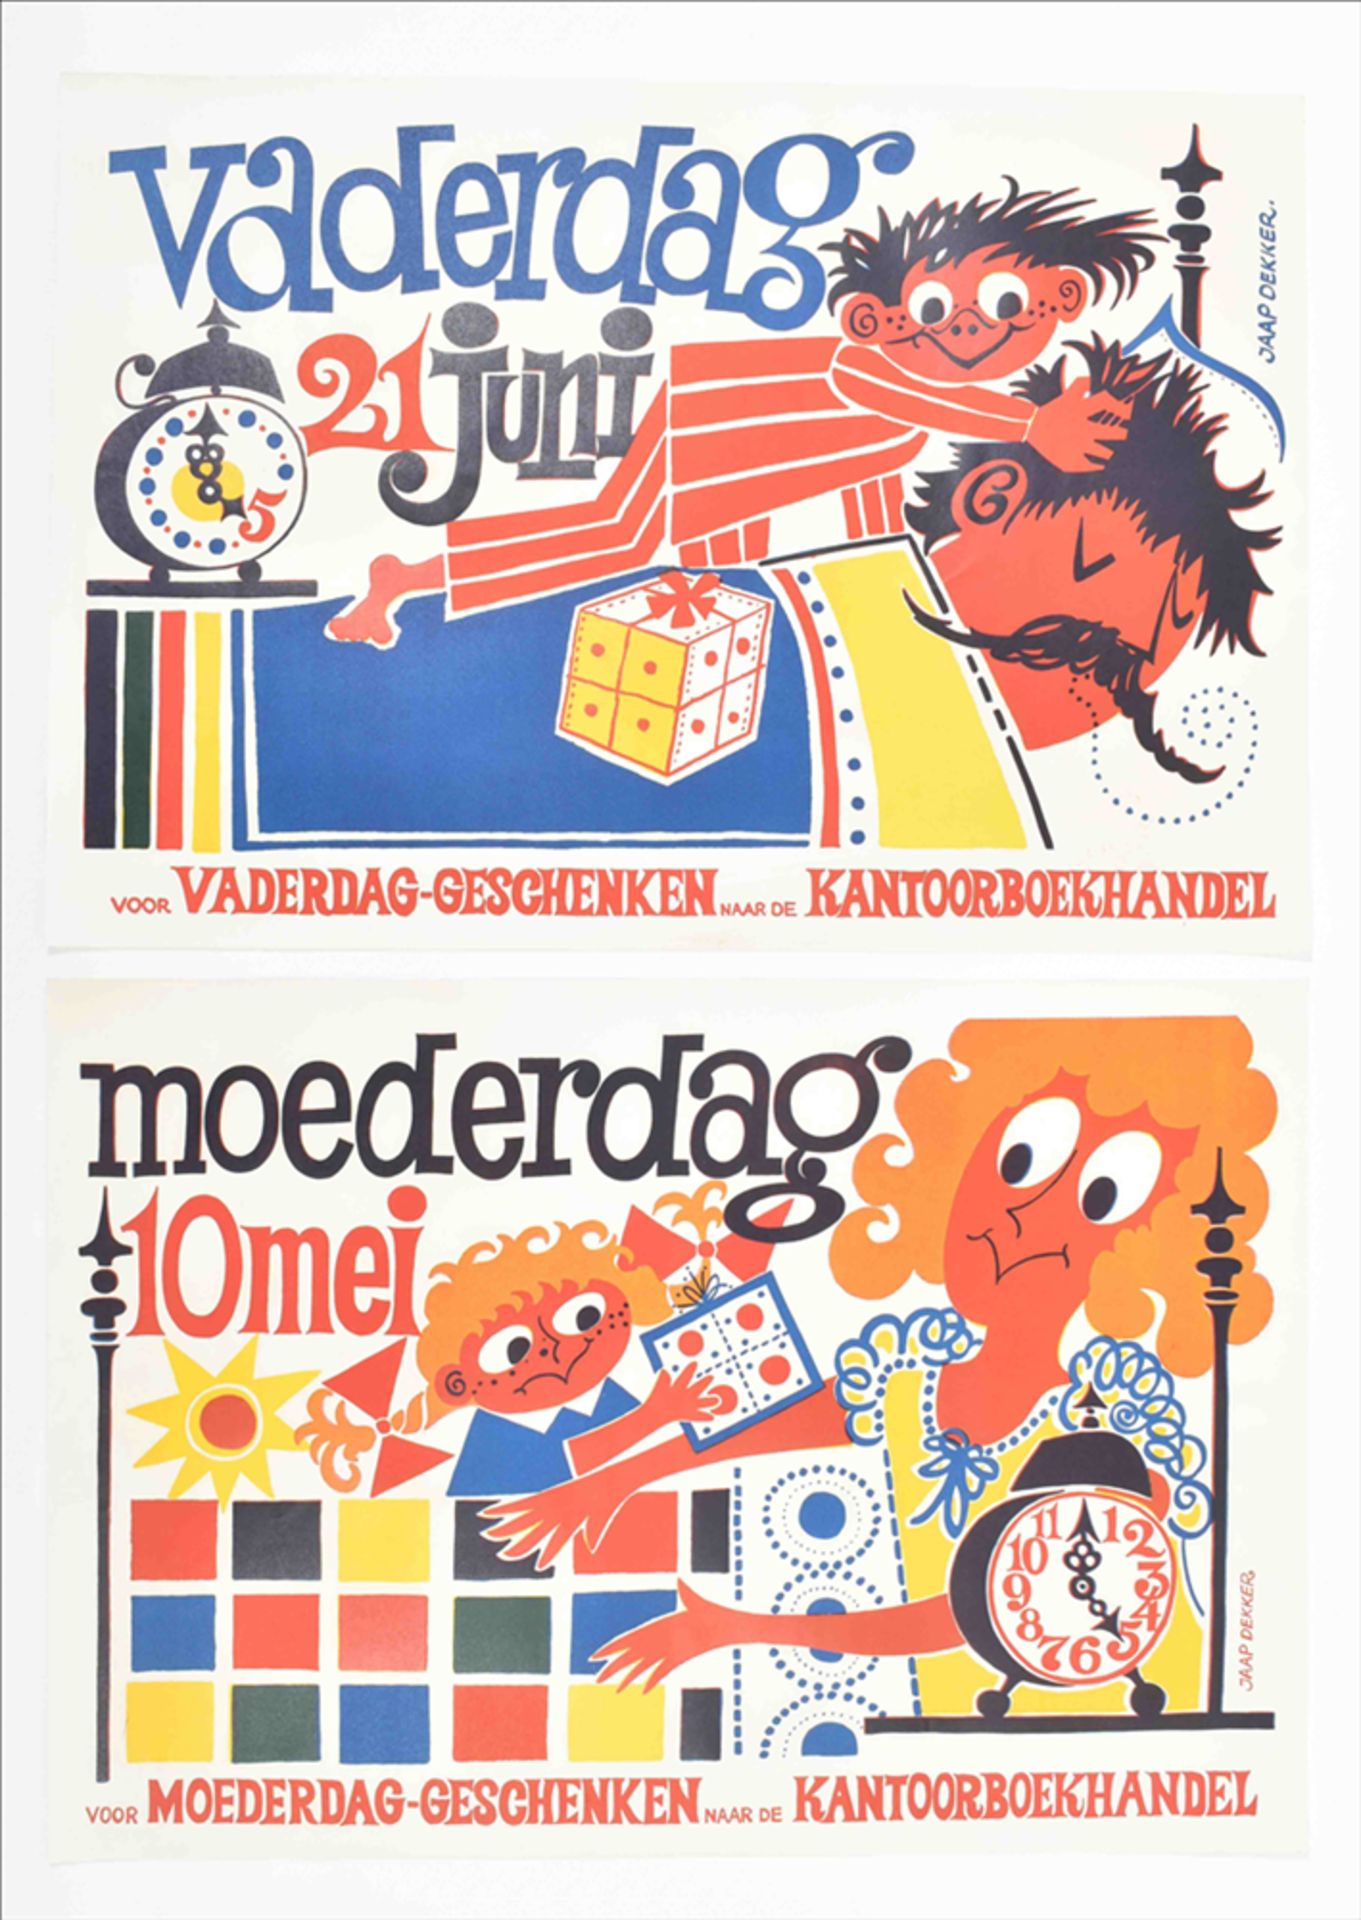 Two posters by Jaap Dekker: (1) "Moederdag 10 mei.